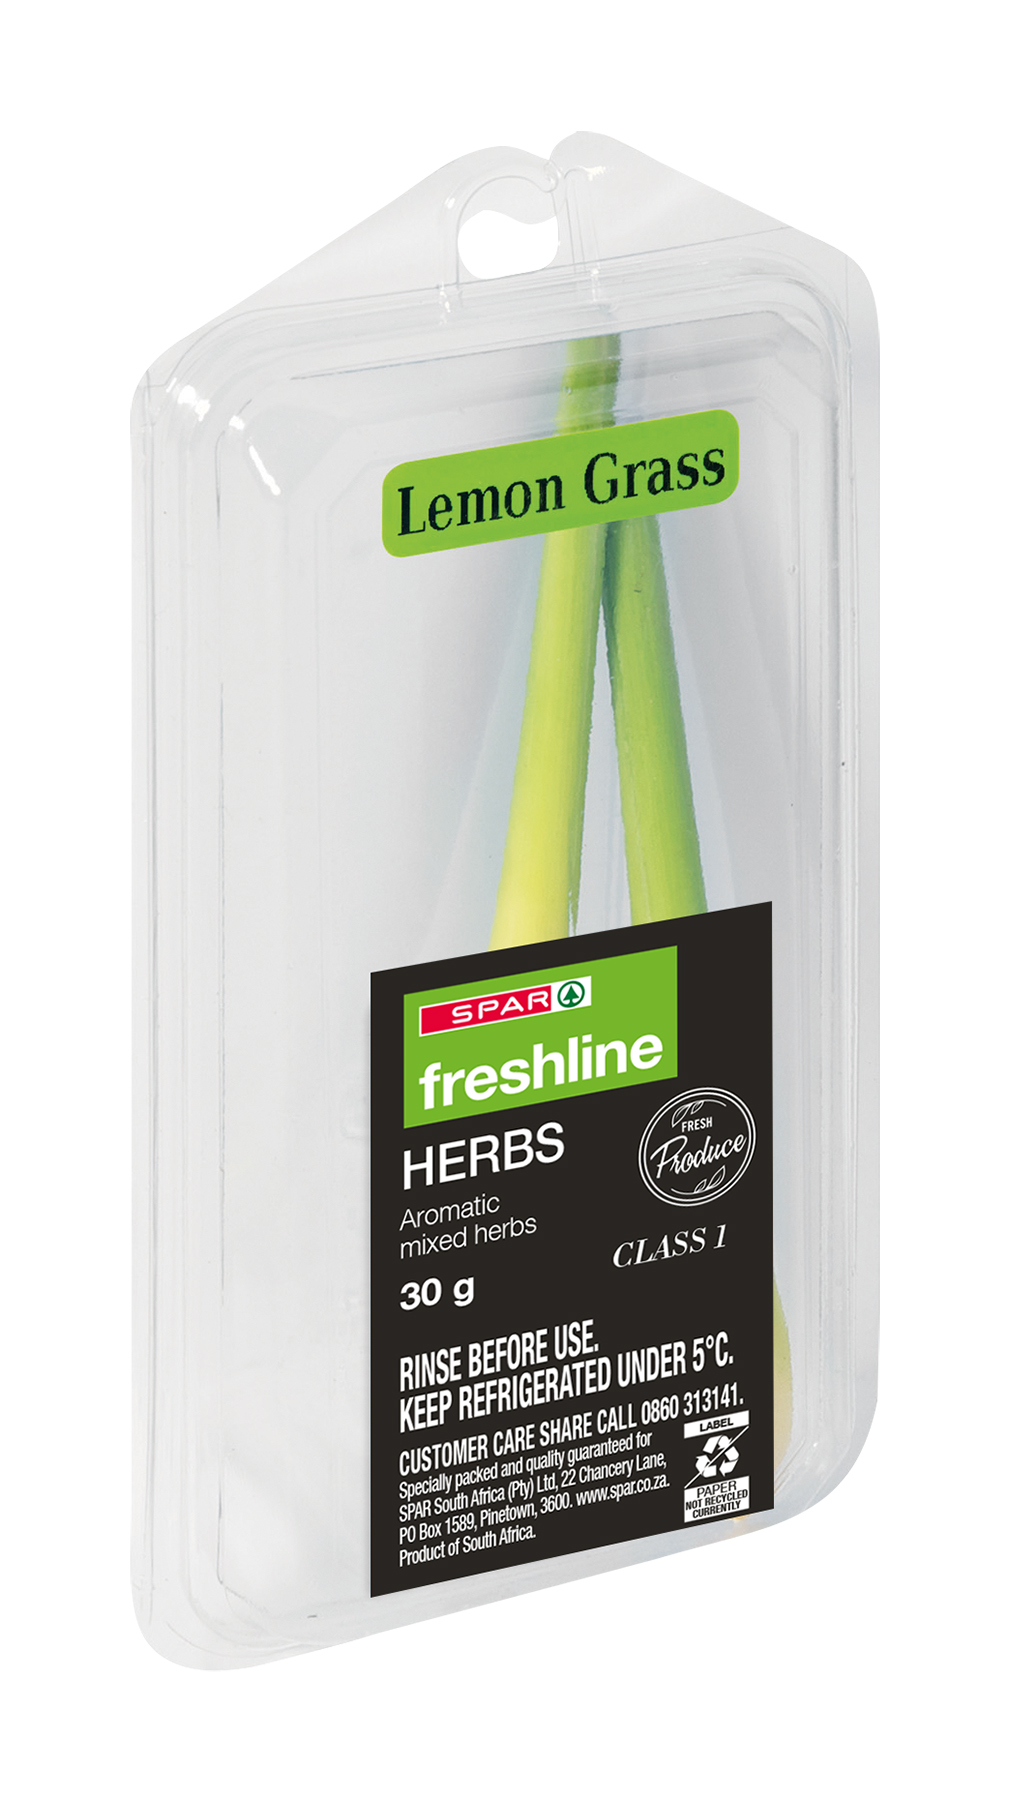 freshline lemon grass